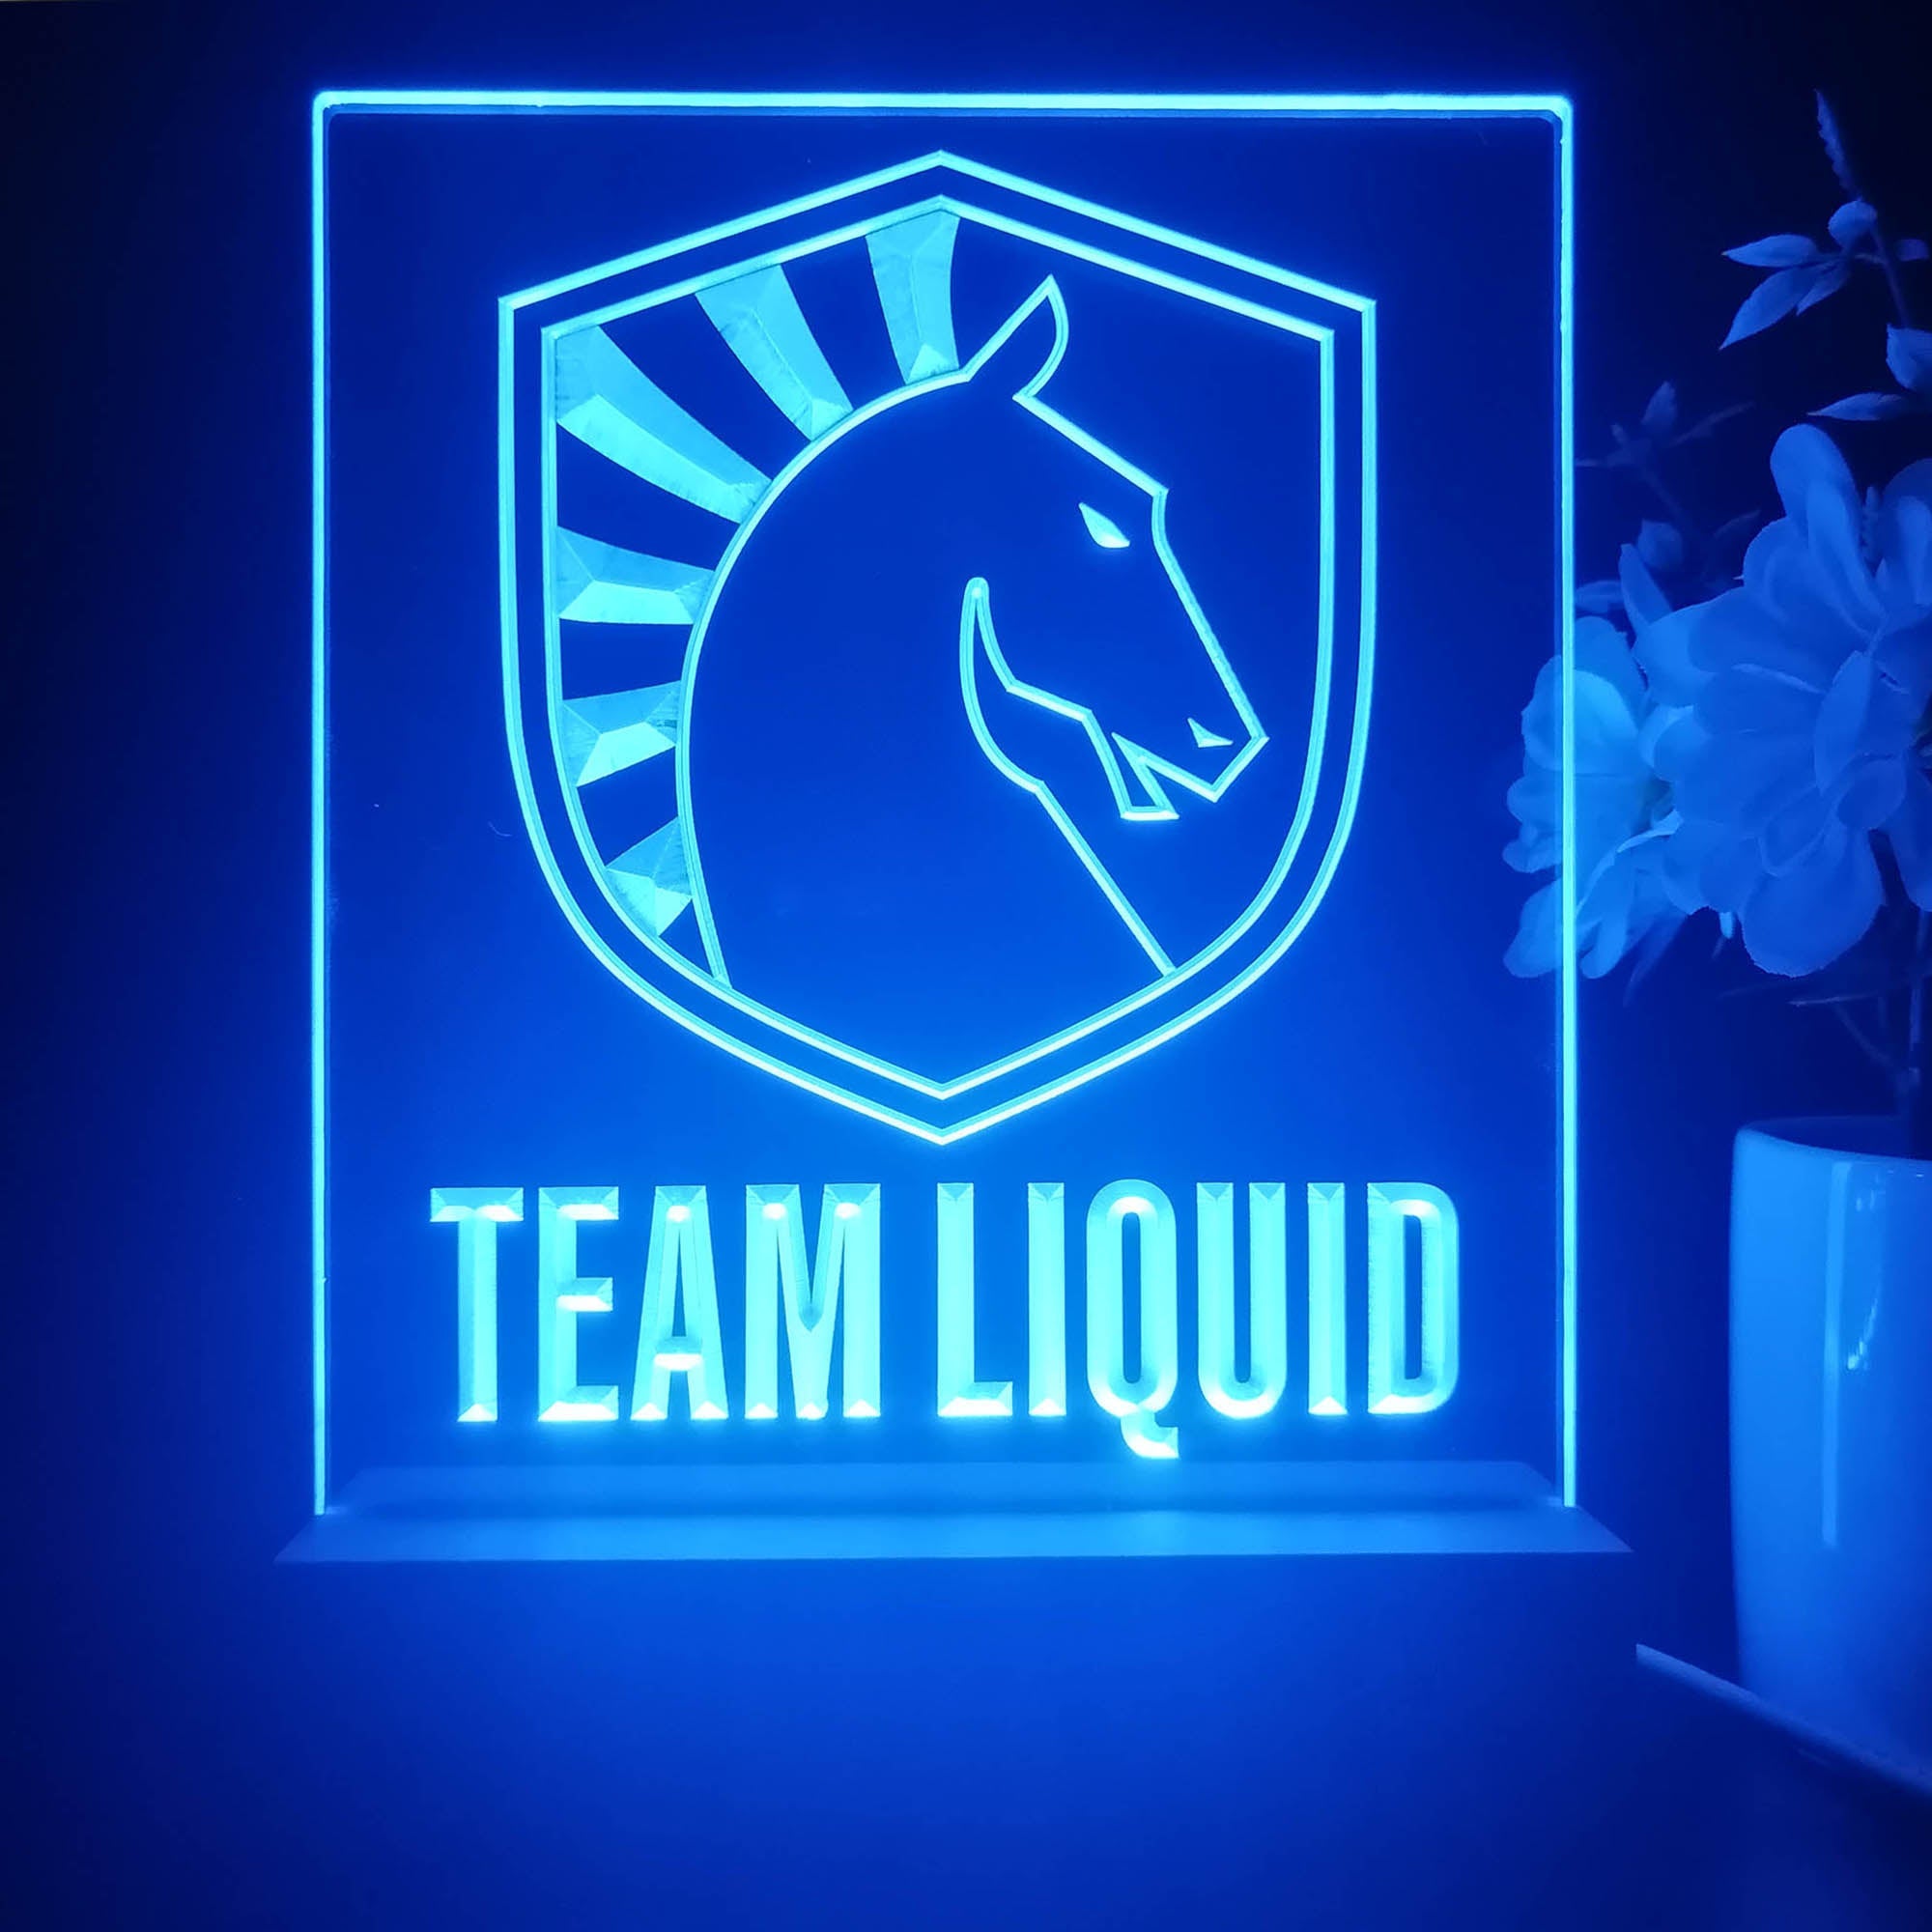 Team Liquid 3D Illusion Night Light Desk Lamp